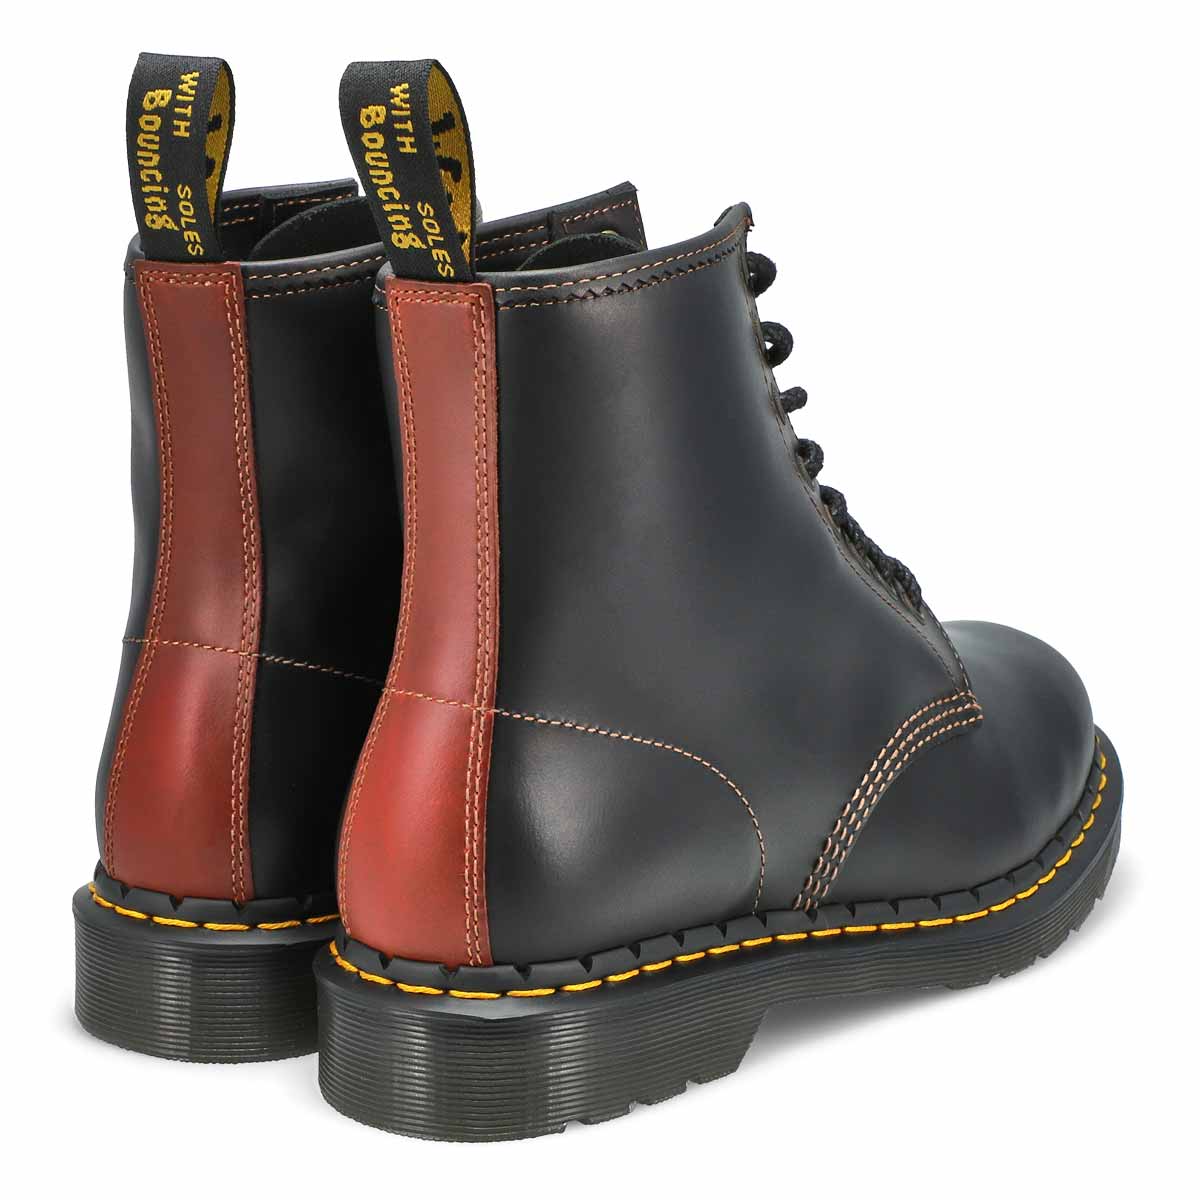 Women's 1460 Abruzzo Boot - Black/Brown